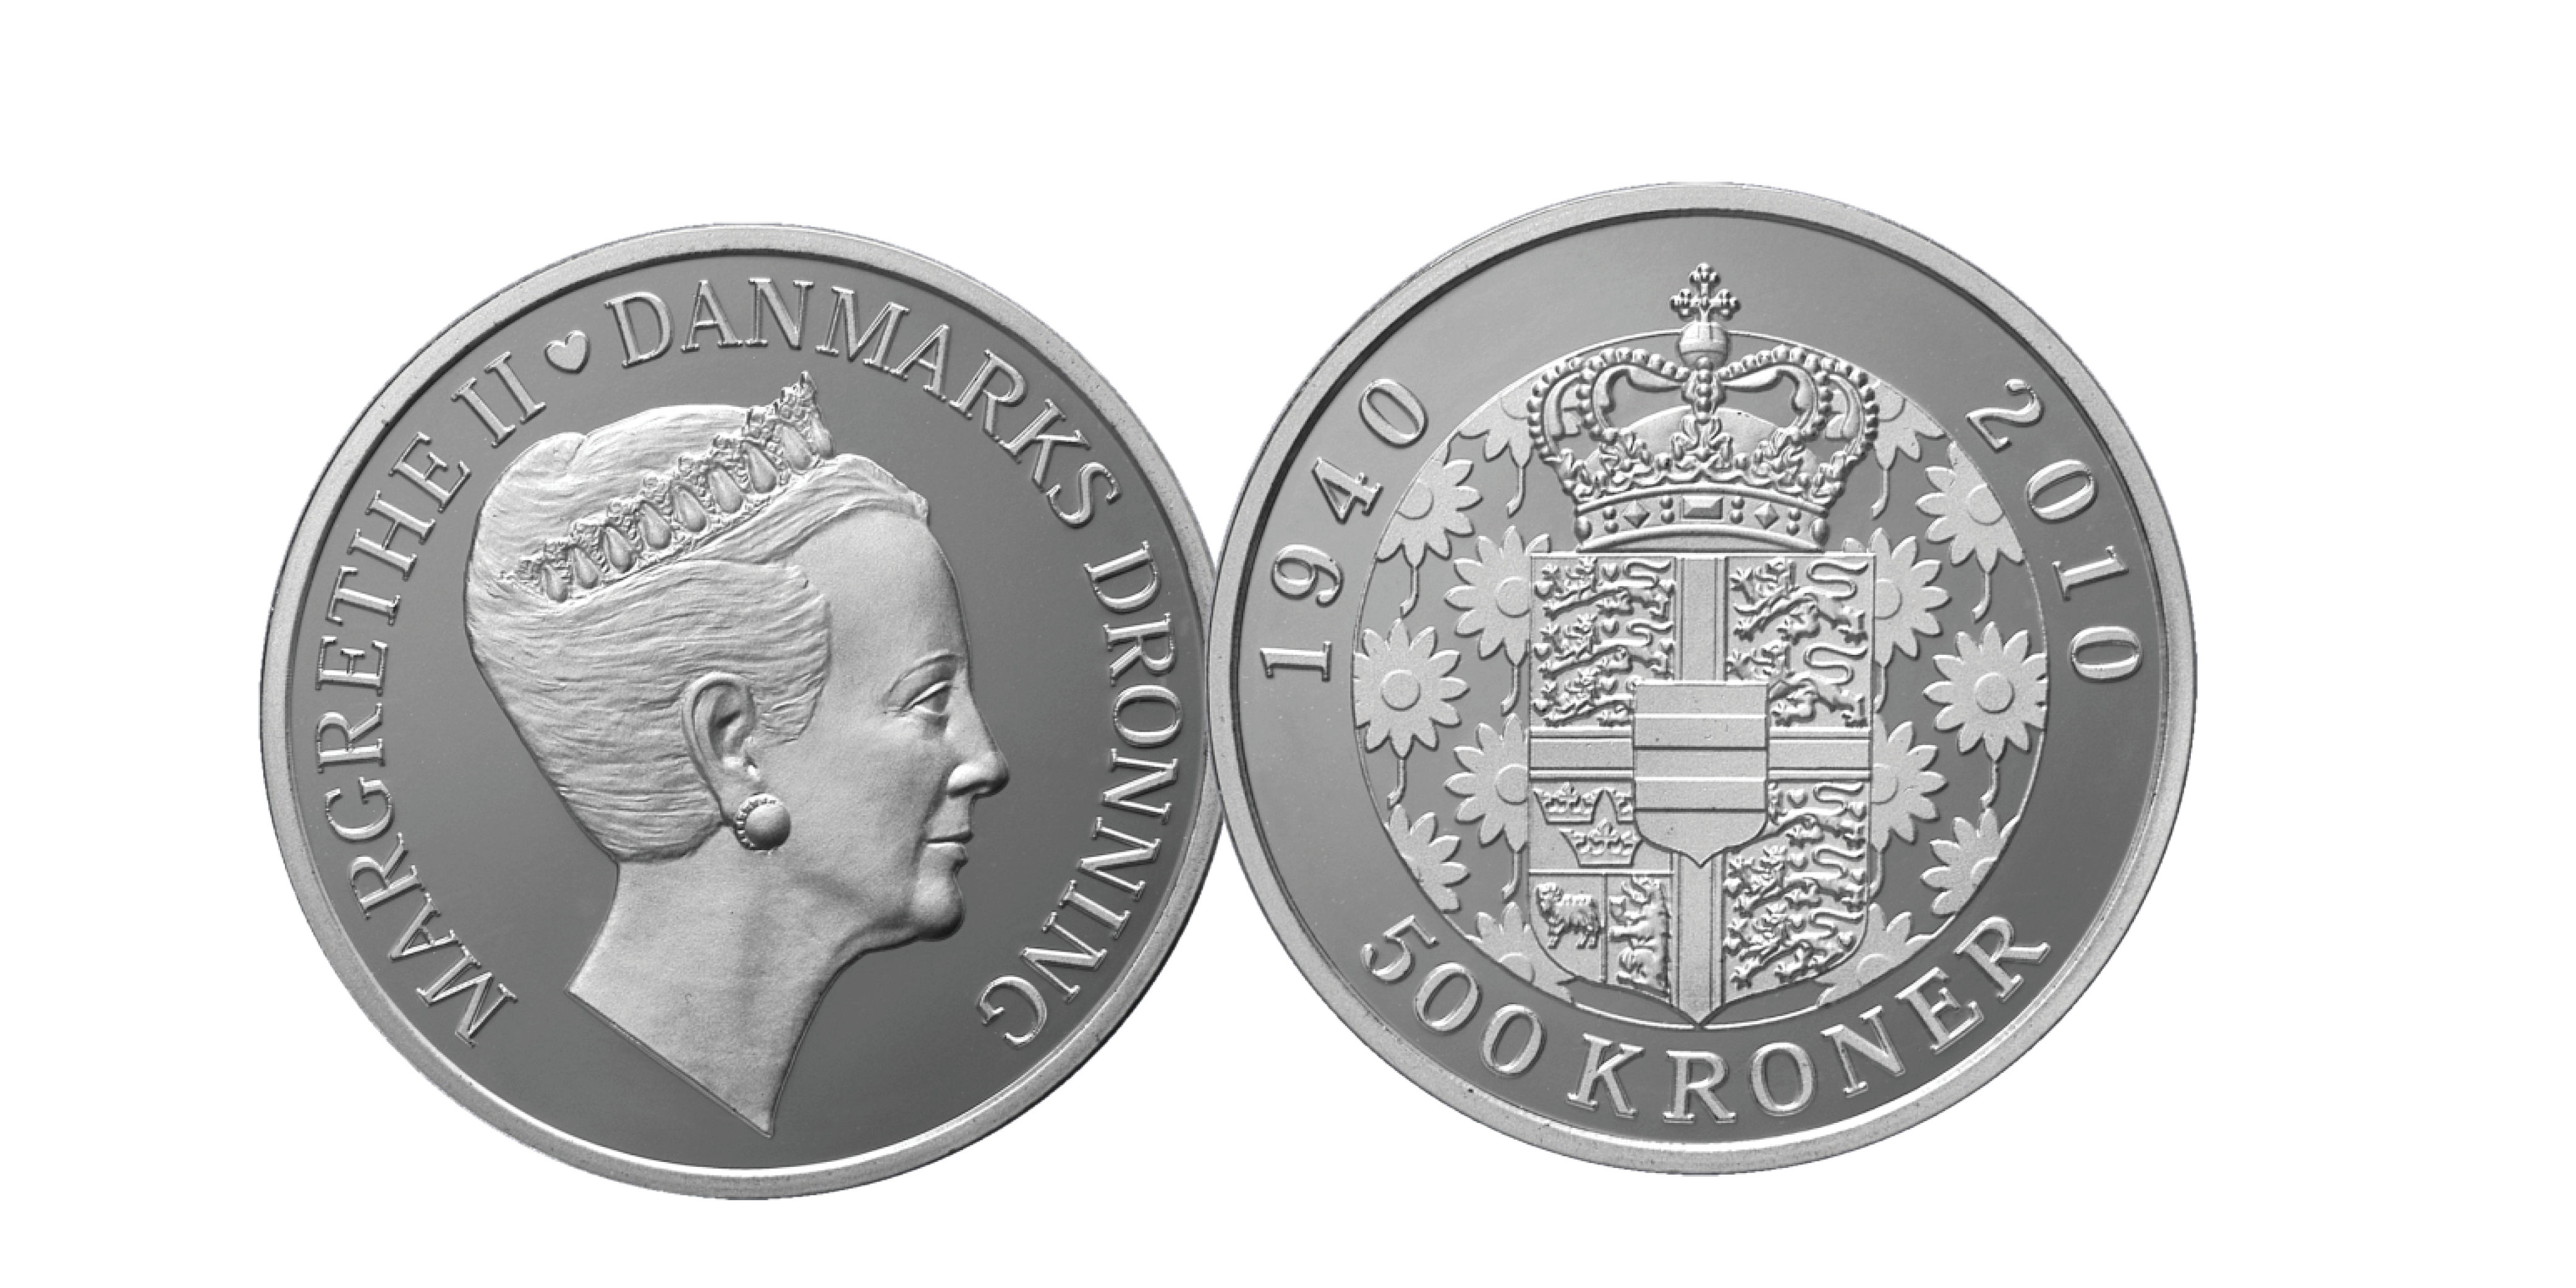 Denne officielle mønt med Hendes Majestæt er præget i 99,9% sølv, en diameter på 38 mm og en vægt på hele 31,10 gram. Mønten er præget i anledning af hendes 70 års fødselsdag 